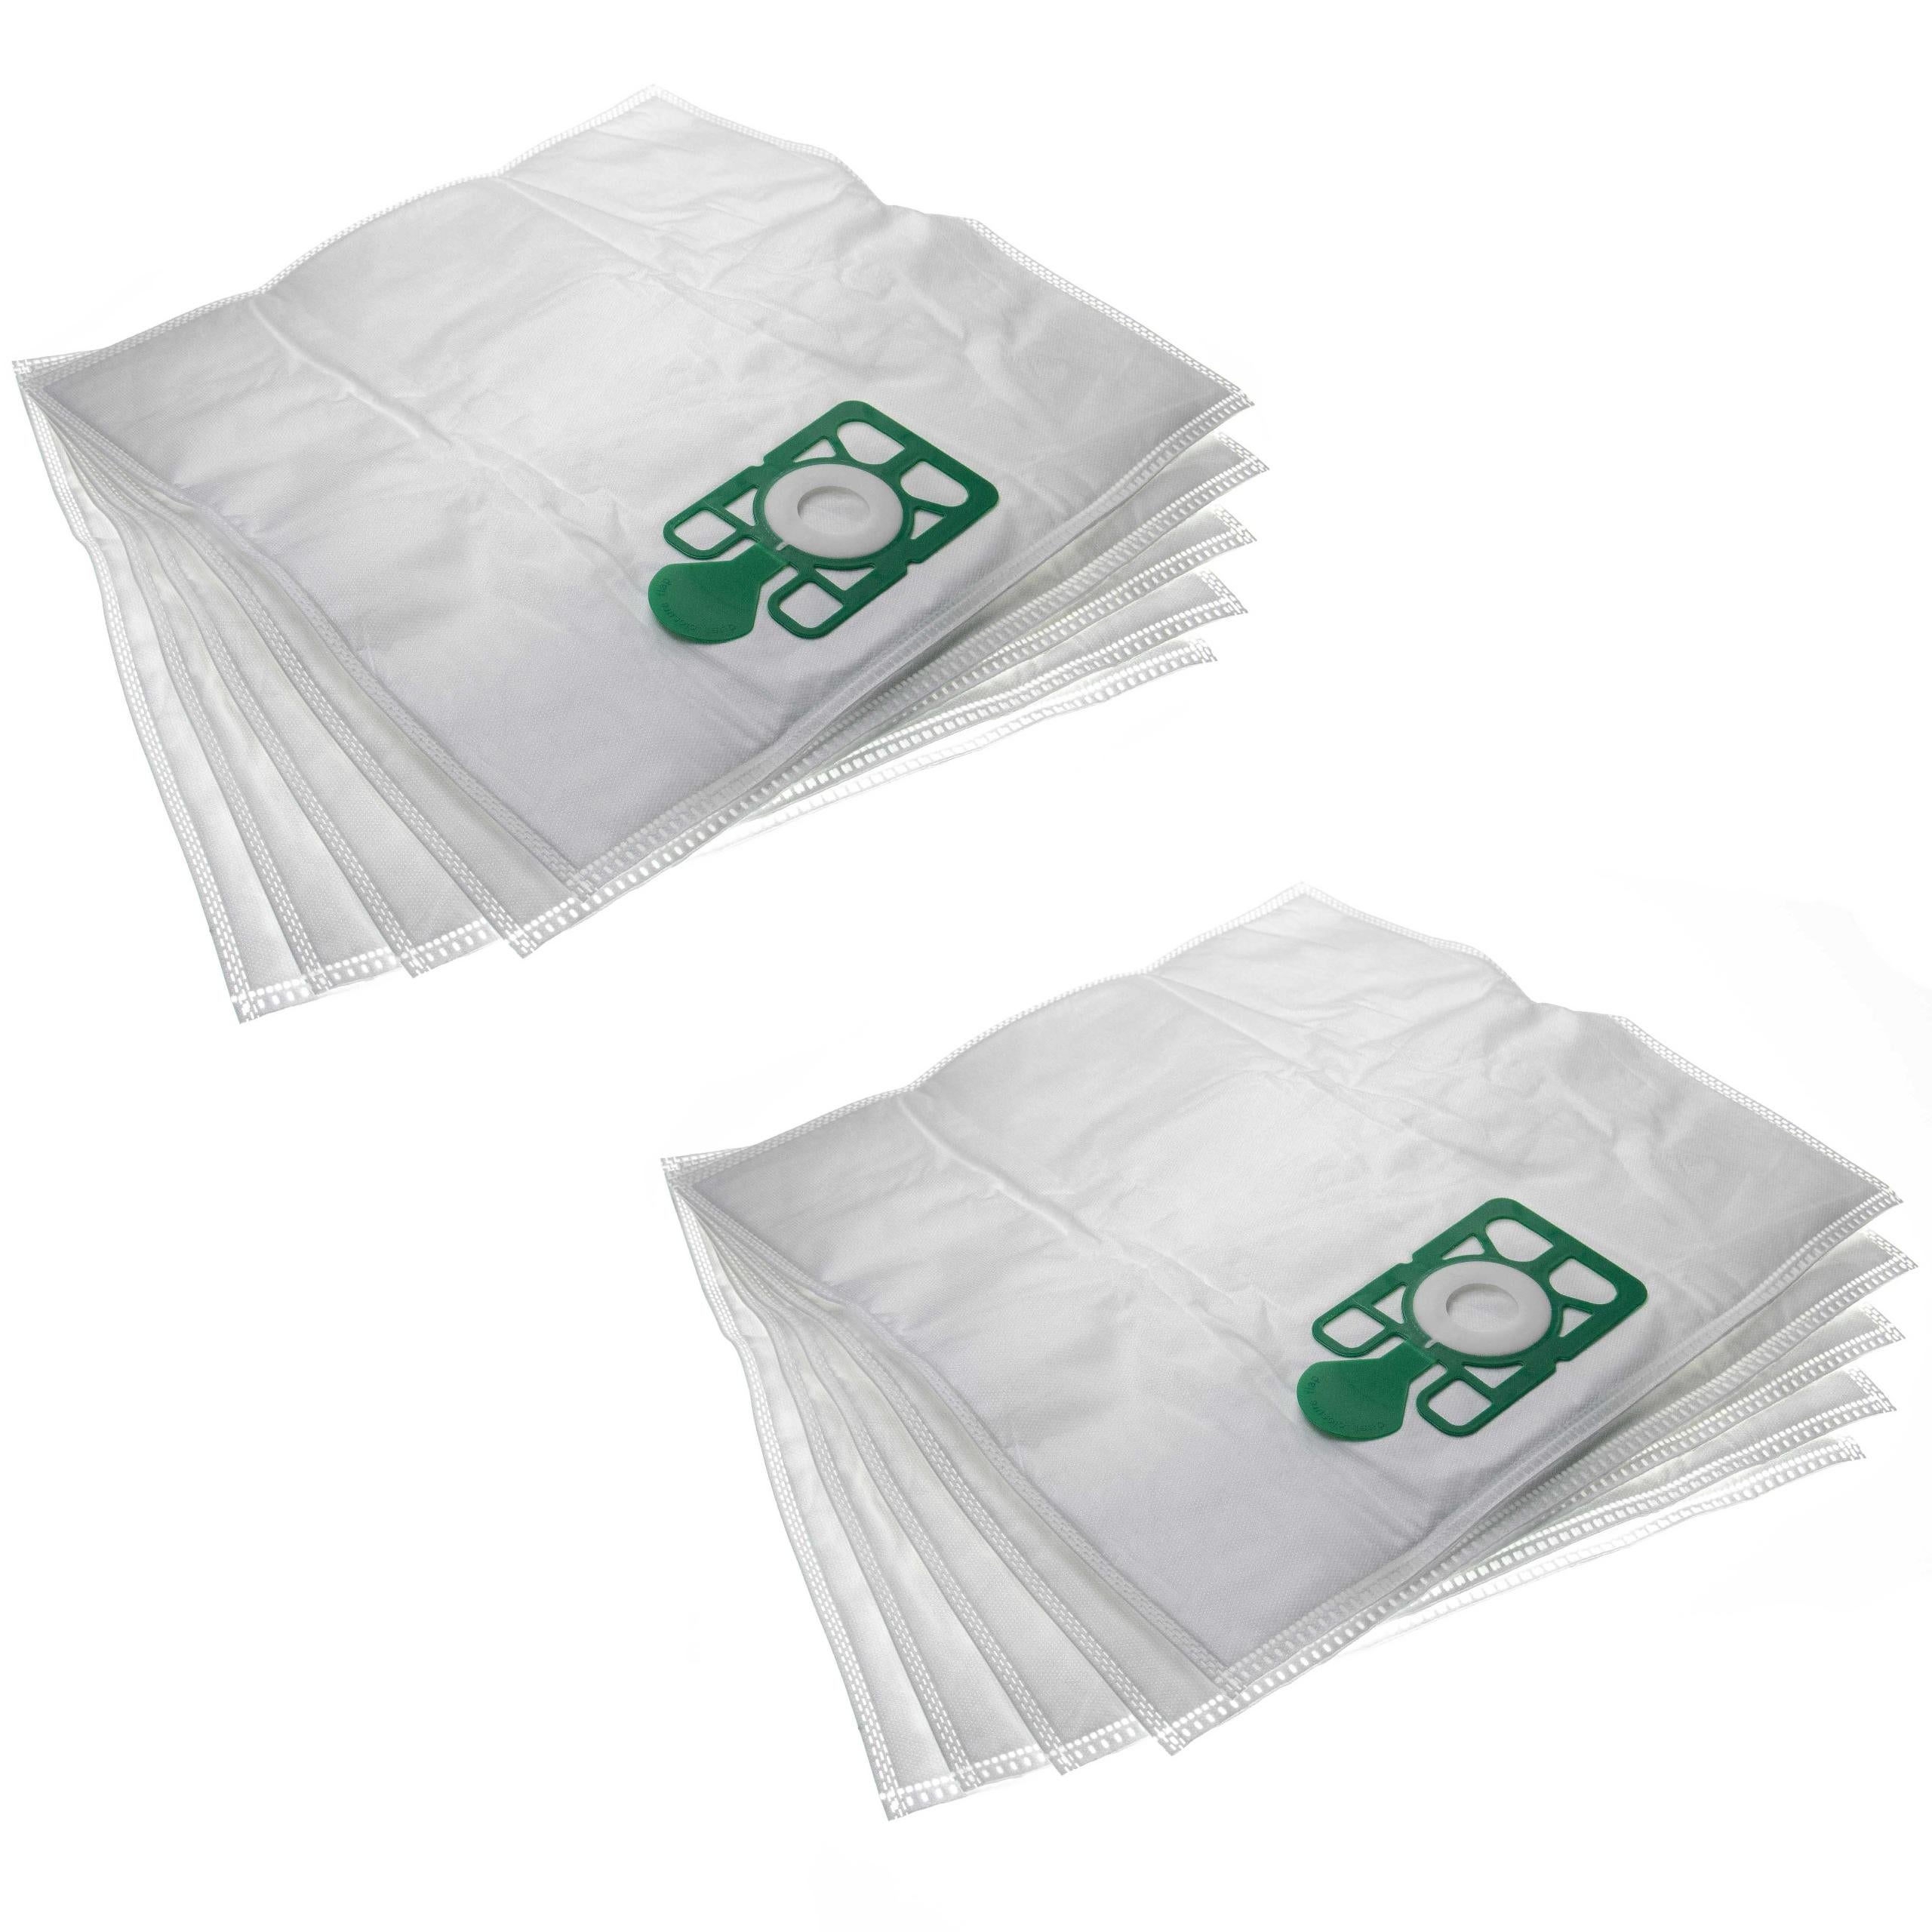 Véritable aspirateur Numatic Hepa-Flo NVM-2BH 604016 sacs pour aspirateurs 1 boîte 10 x sacs